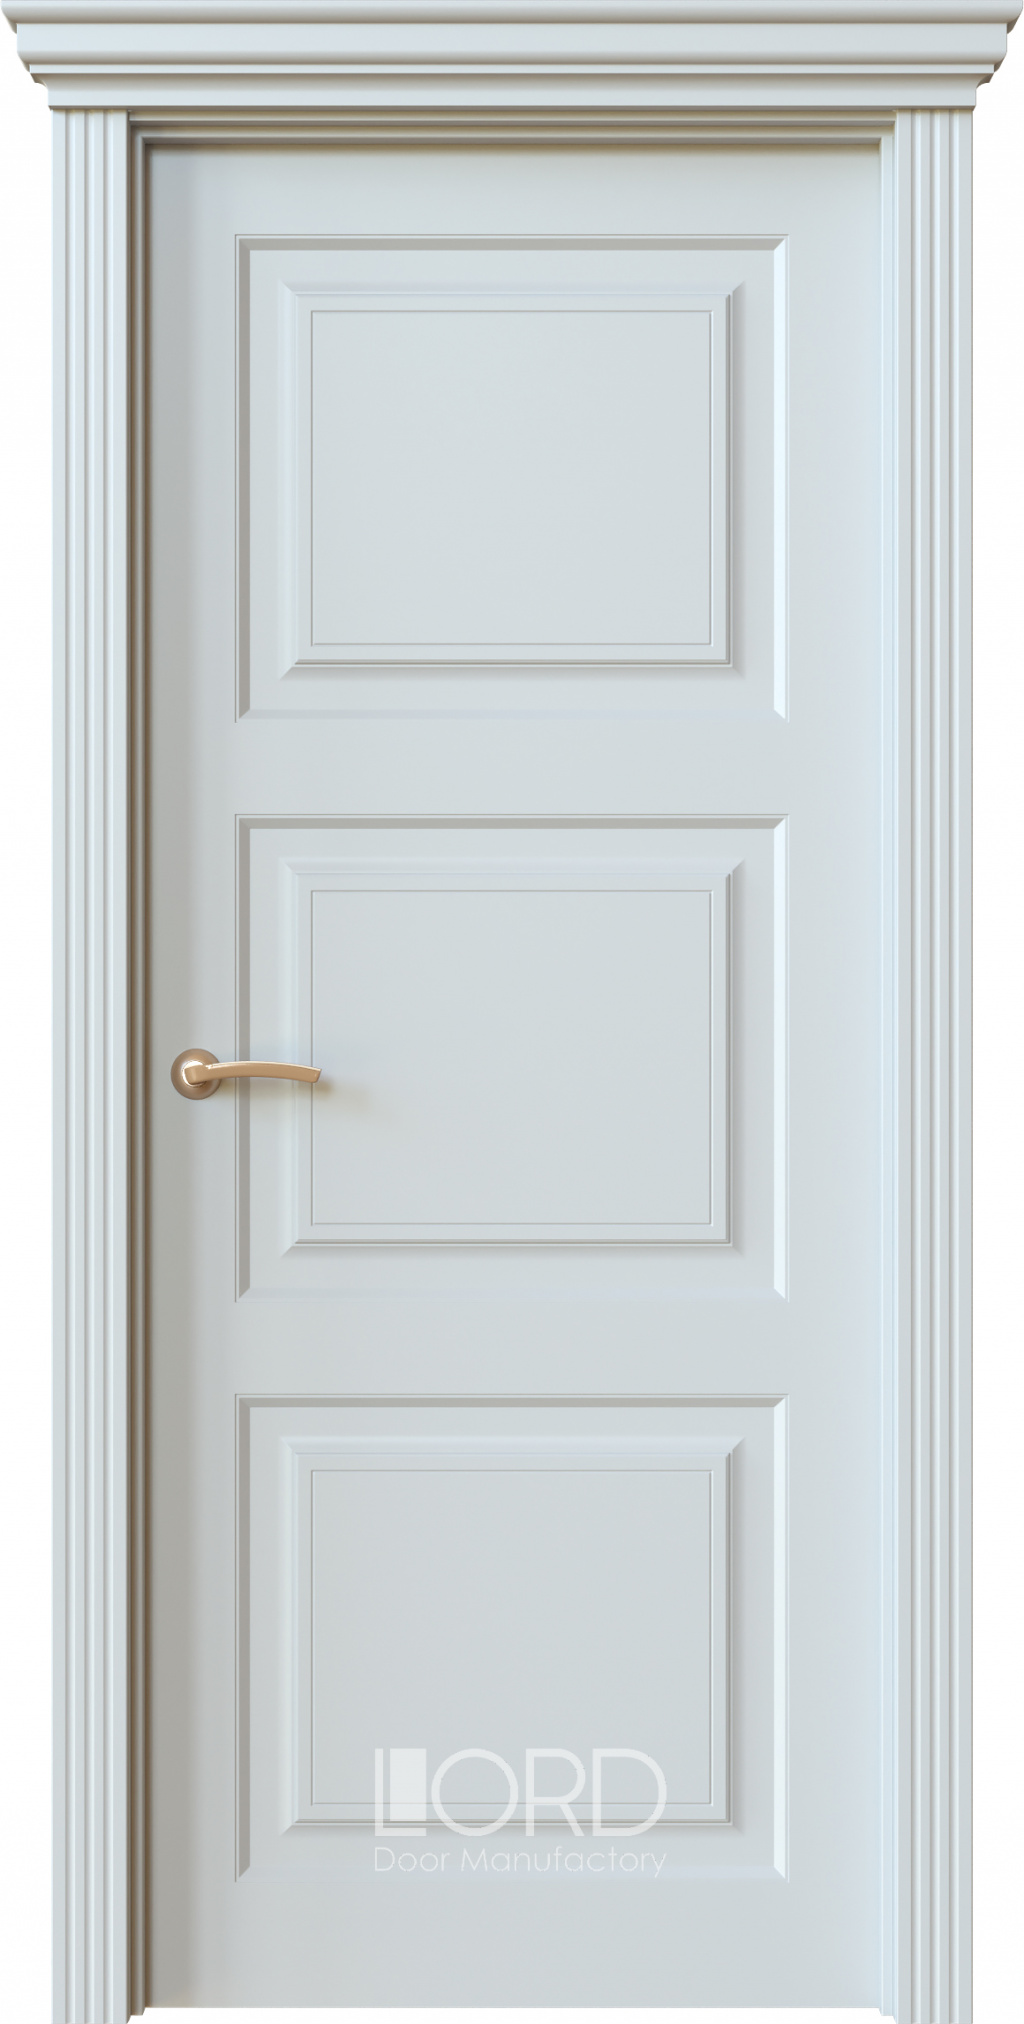 Лорд Межкомнатная дверь Dolce 5 ДГ, арт. 22452 - фото №1